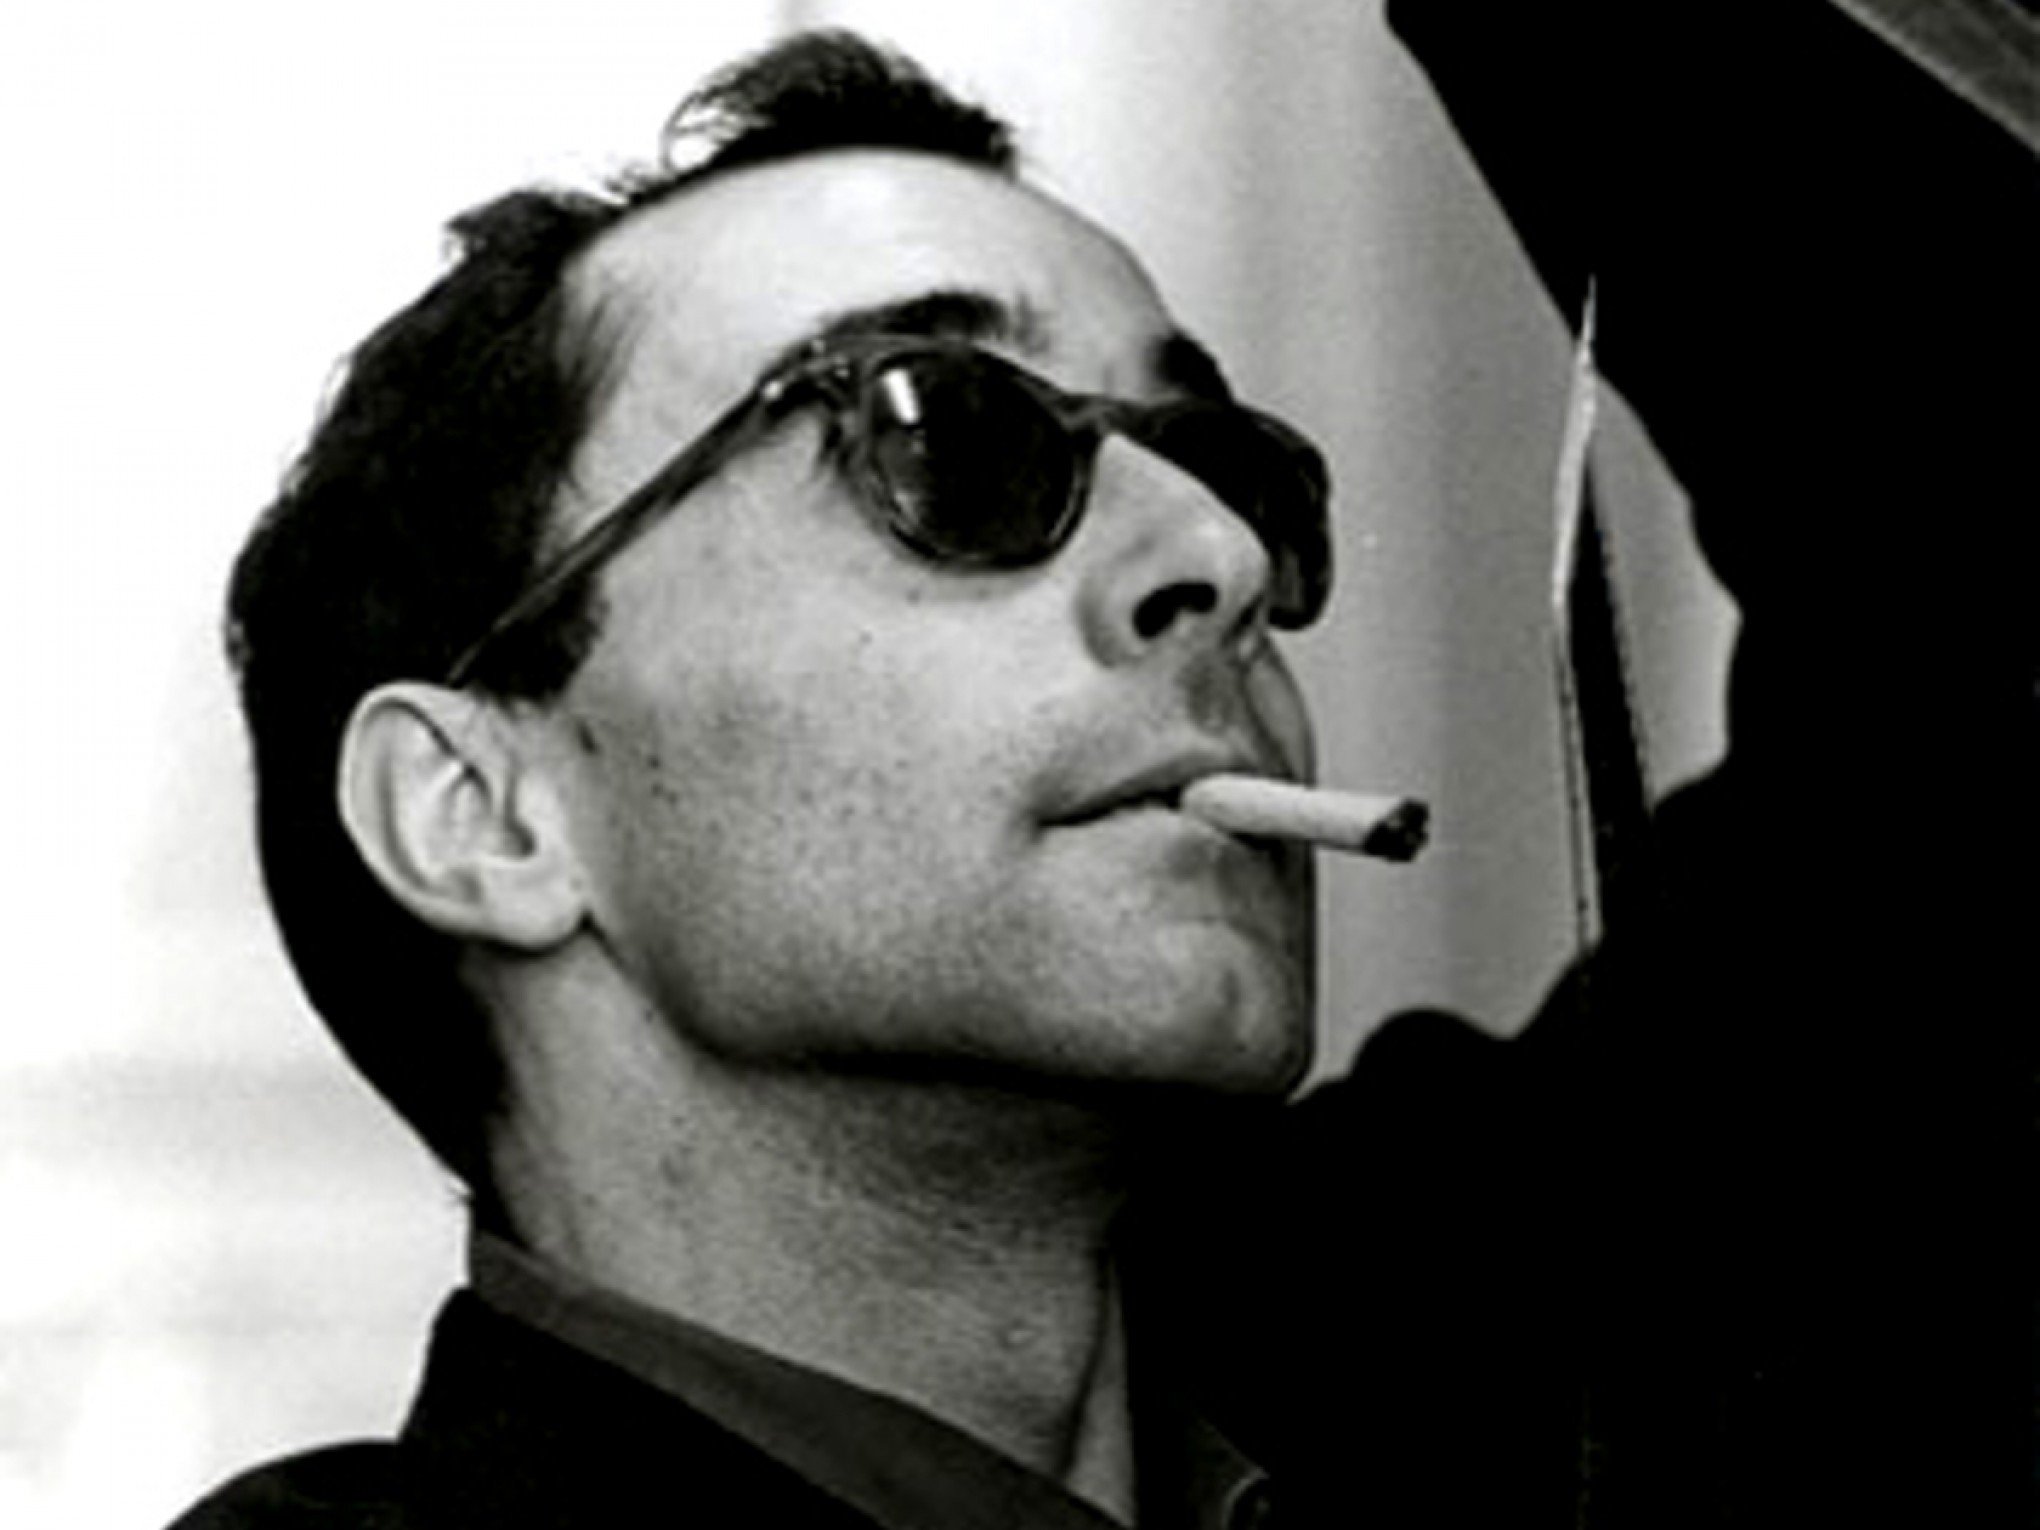 Morre Jean-Luc Godard, cineasta dos filmes políticos e radicais - Gente -  Jornal NH